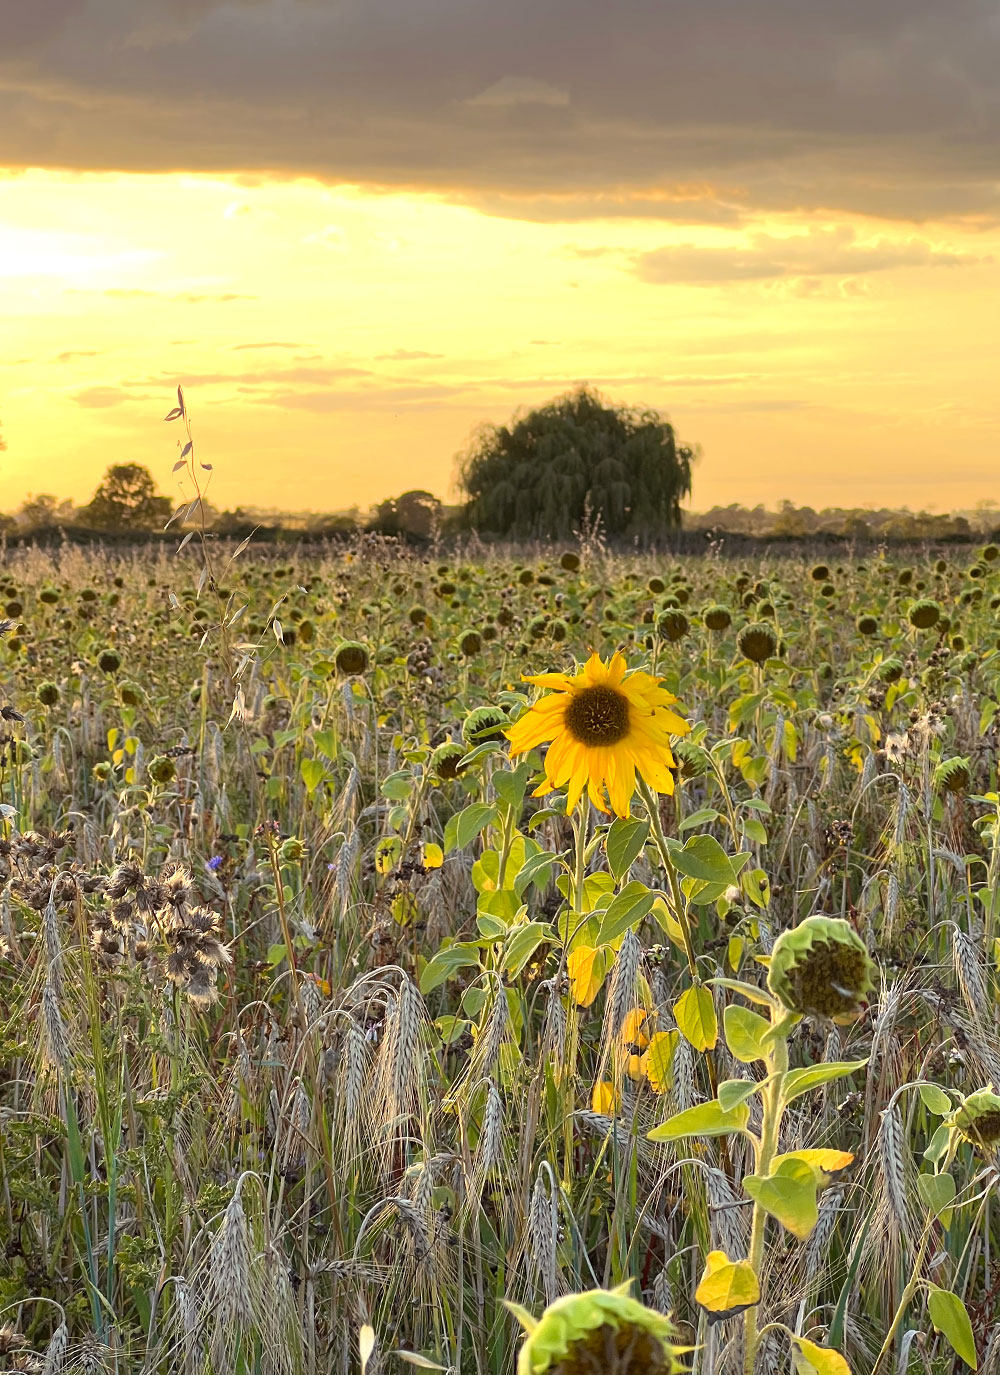 Sunflower in a field in England